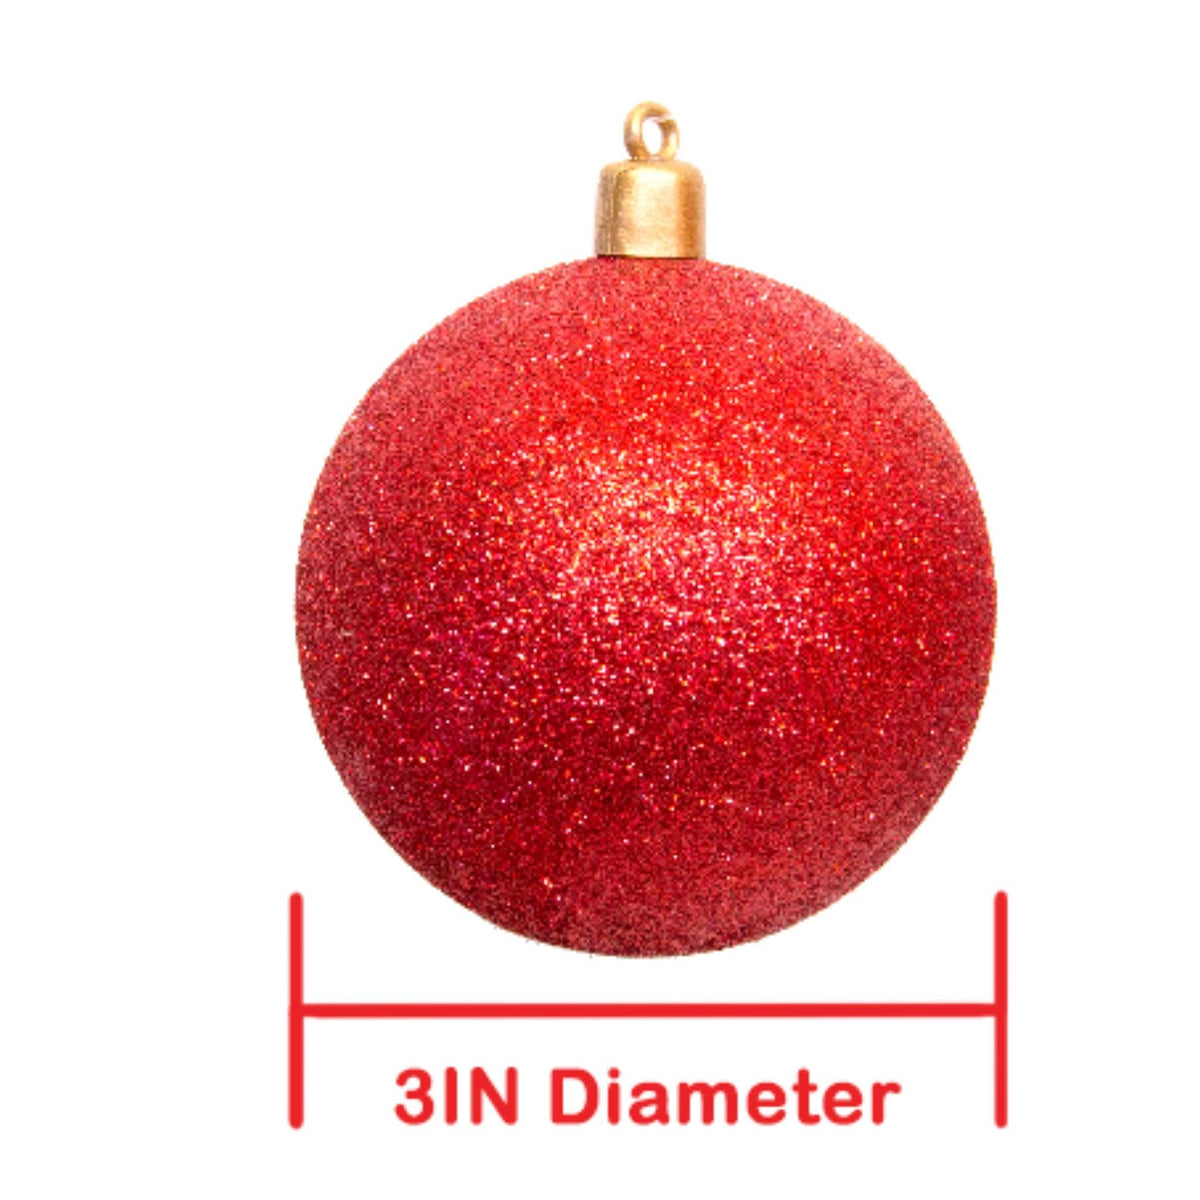 Snowflake Glitter 5.25 Inch Plastic Ornament